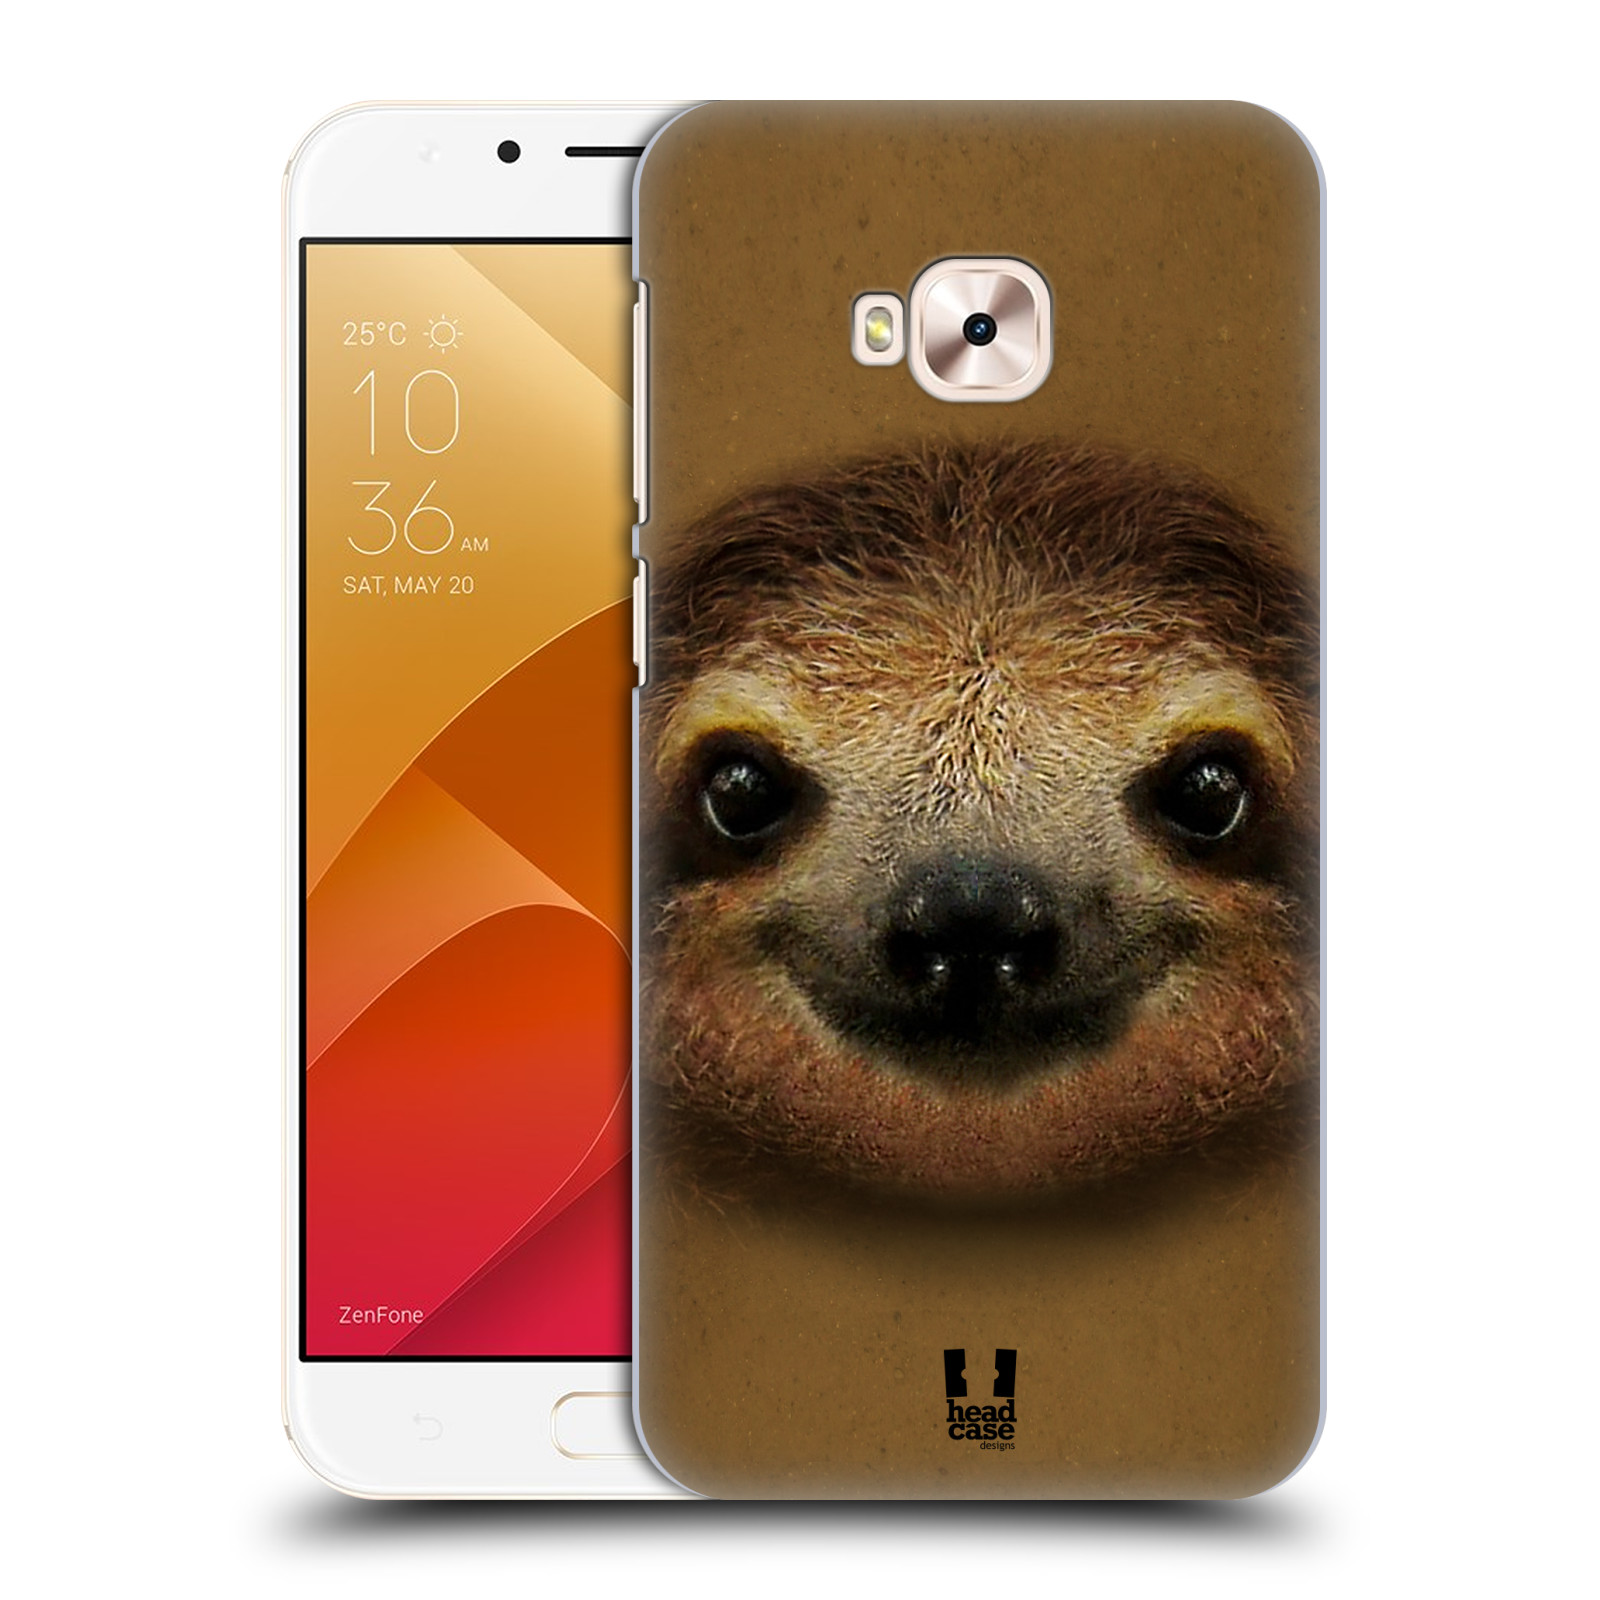 HEAD CASE plastový obal na mobil Asus Zenfone 4 Selfie Pro ZD552KL vzor Zvířecí tváře 2 lenochod